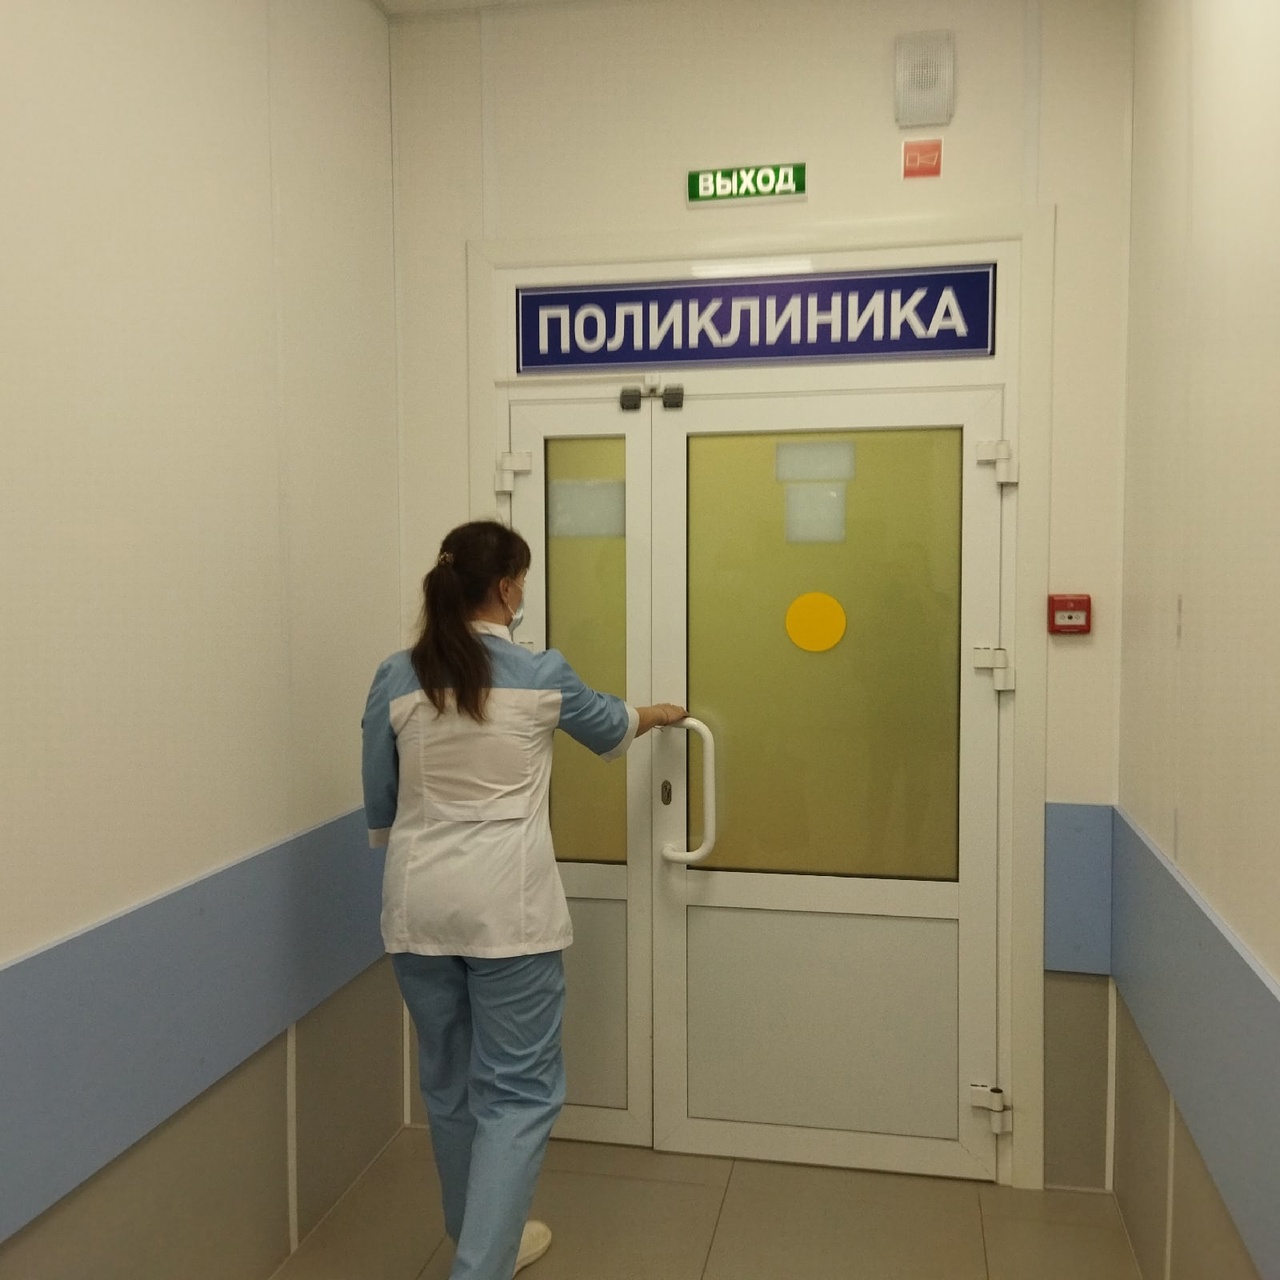  В Кирове более 100 человек пострадали от действий псевдоврачей